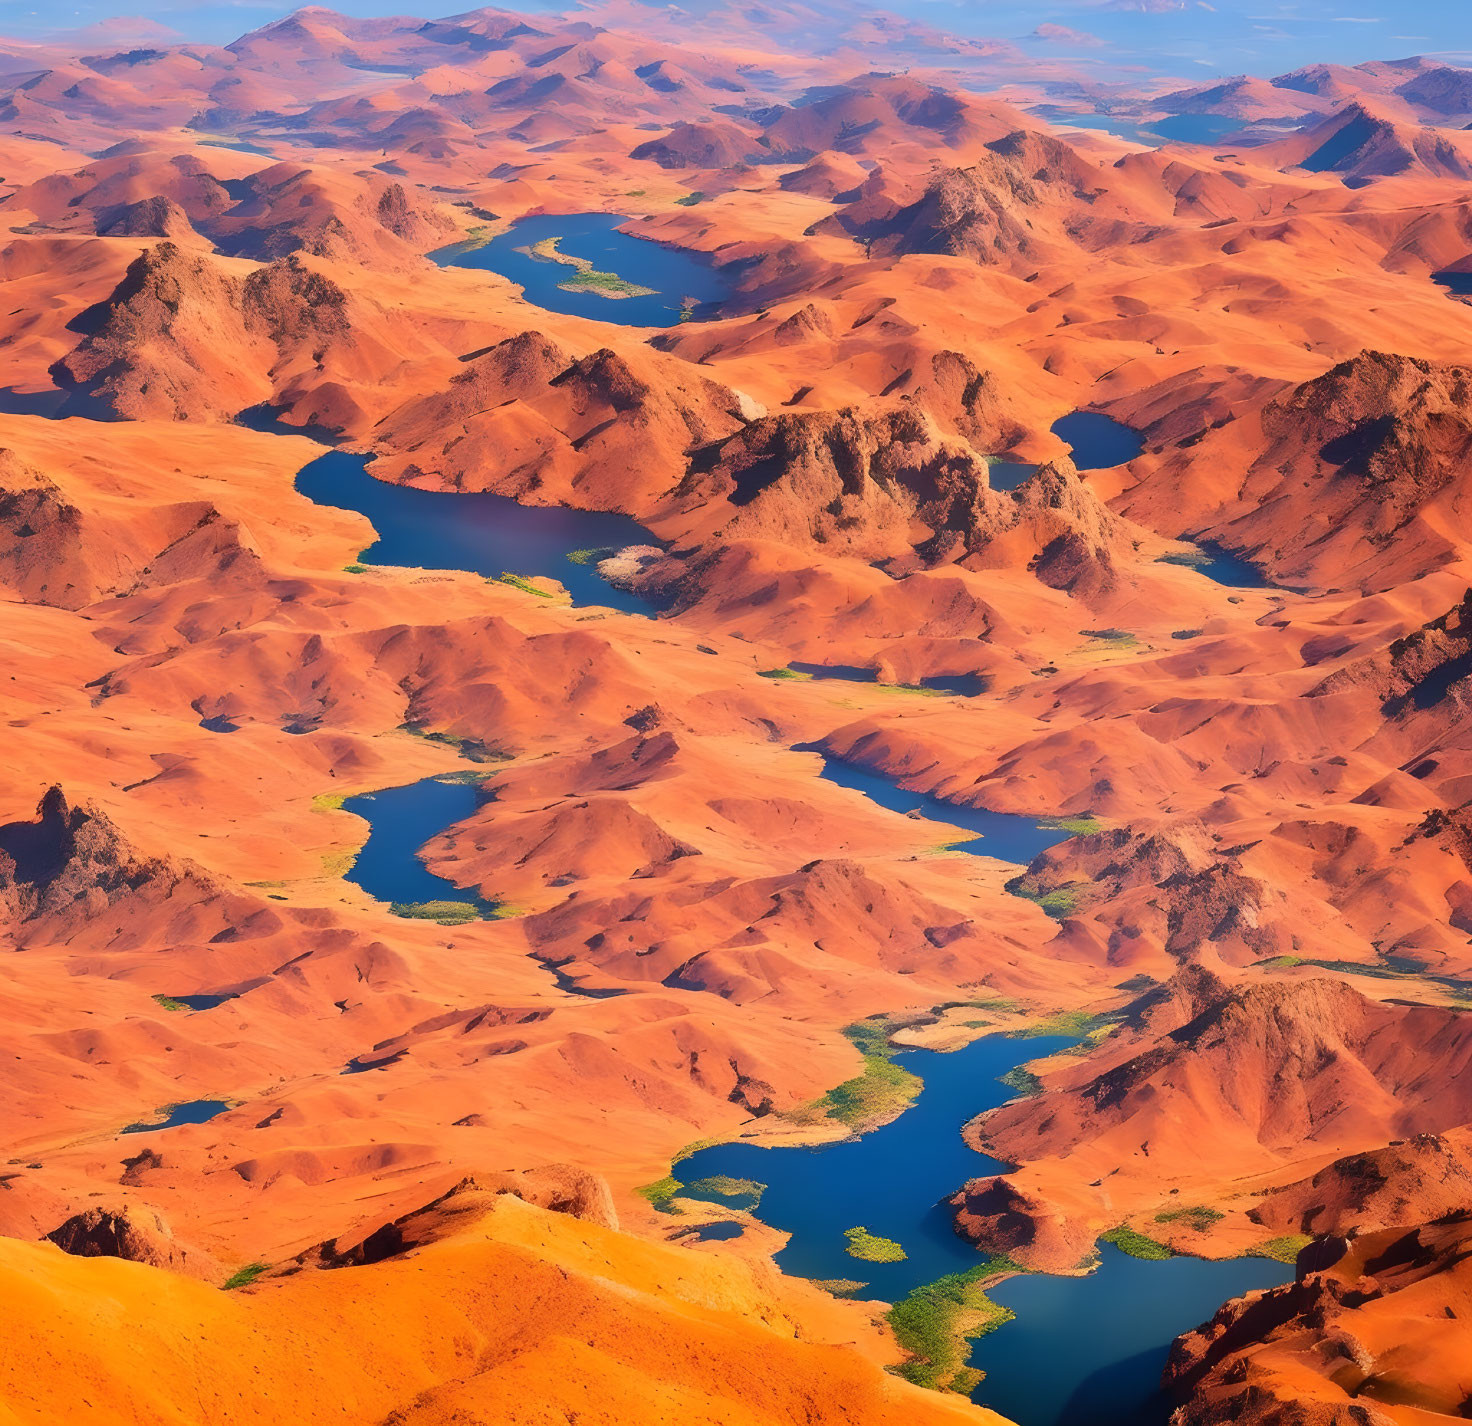 Sinuous river meandering through vibrant orange desert landscape